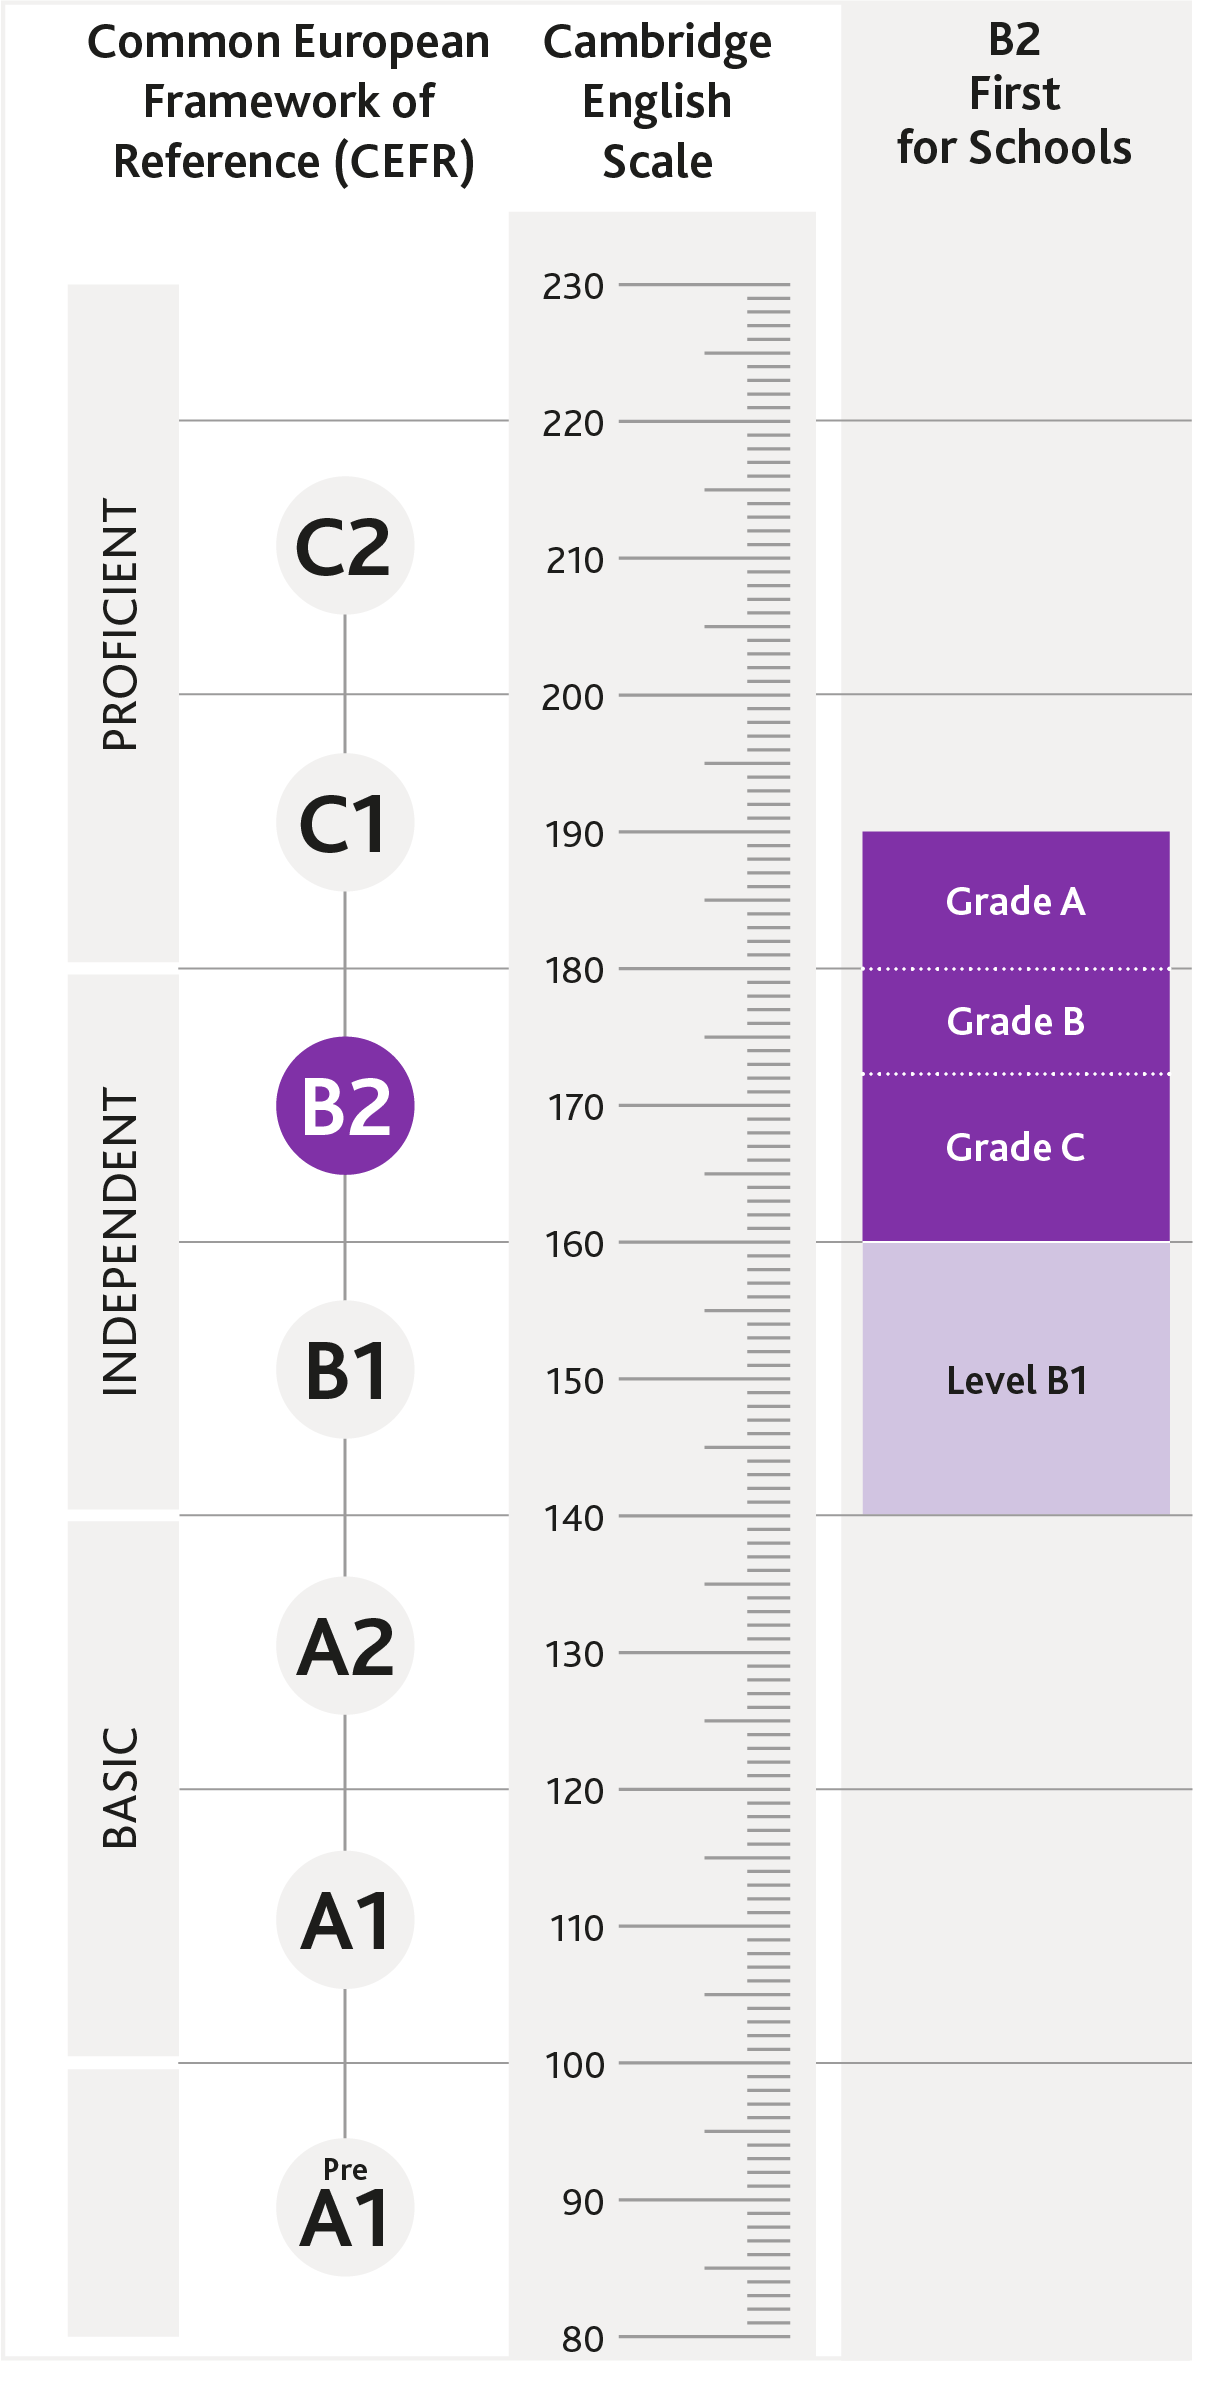 Diagrama de onde B2 First for Schools está alinhado CEFR e Cambridge English Scale